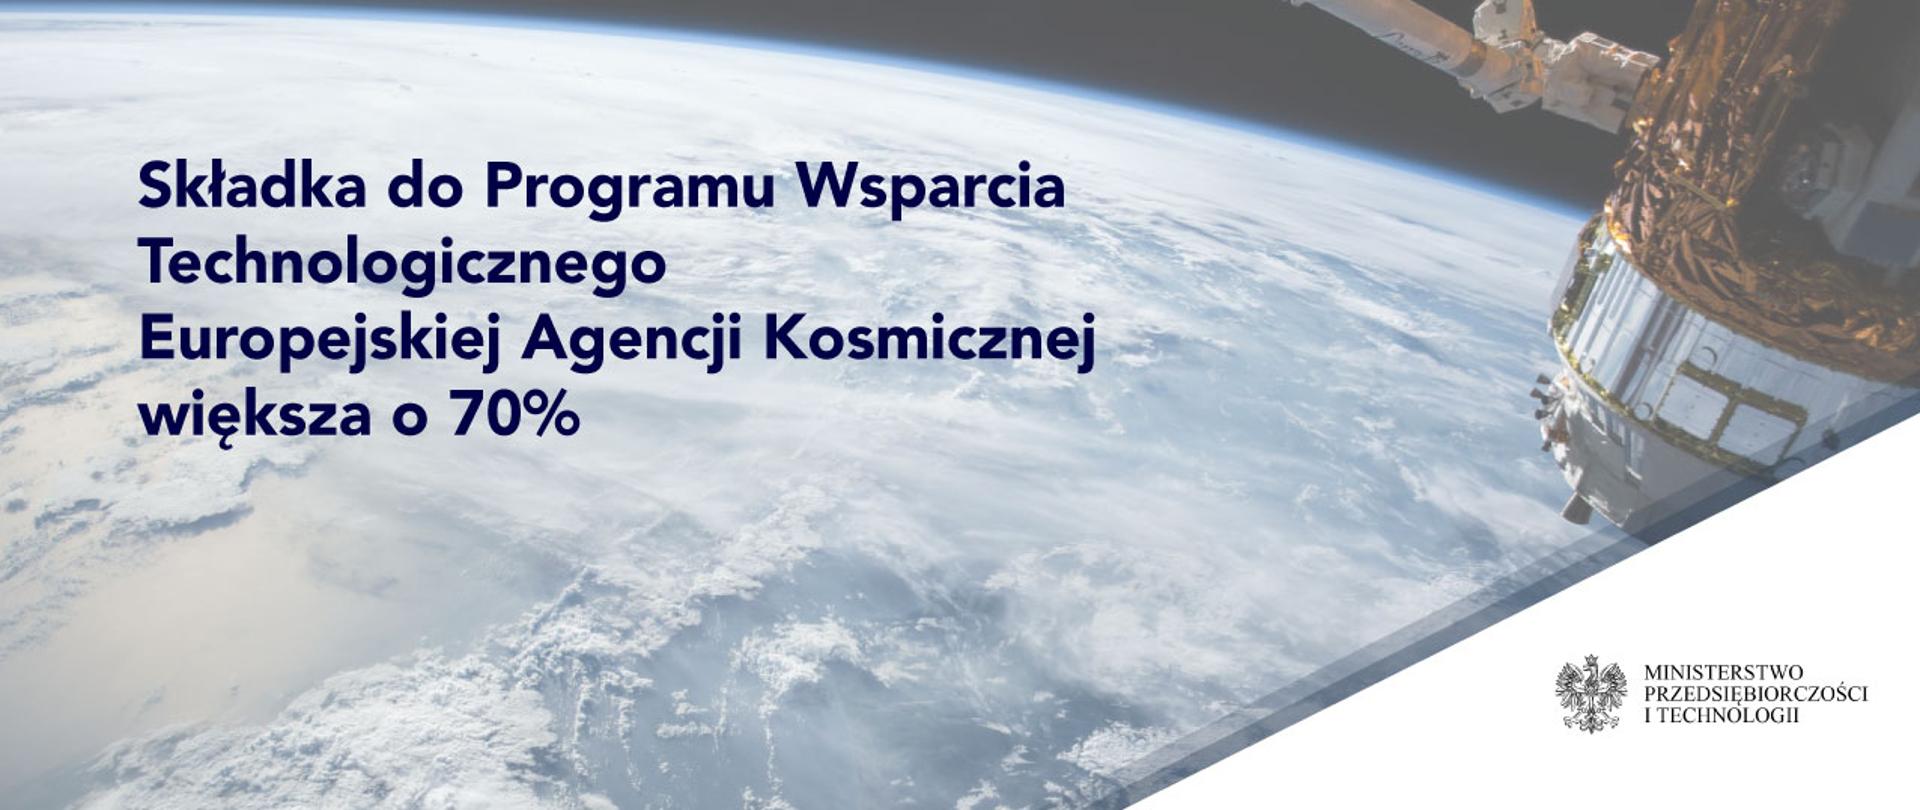 Tekst: składka do Programu Wsparcia Technologicznego Europejskiej Agencji Kosmicznej większa o 70%. W tle grafika przedstawiająca przestrzeń kosmiczną oraz satelitę. W prawym dolnym roku na białym tle znajduje się logo MPiT.